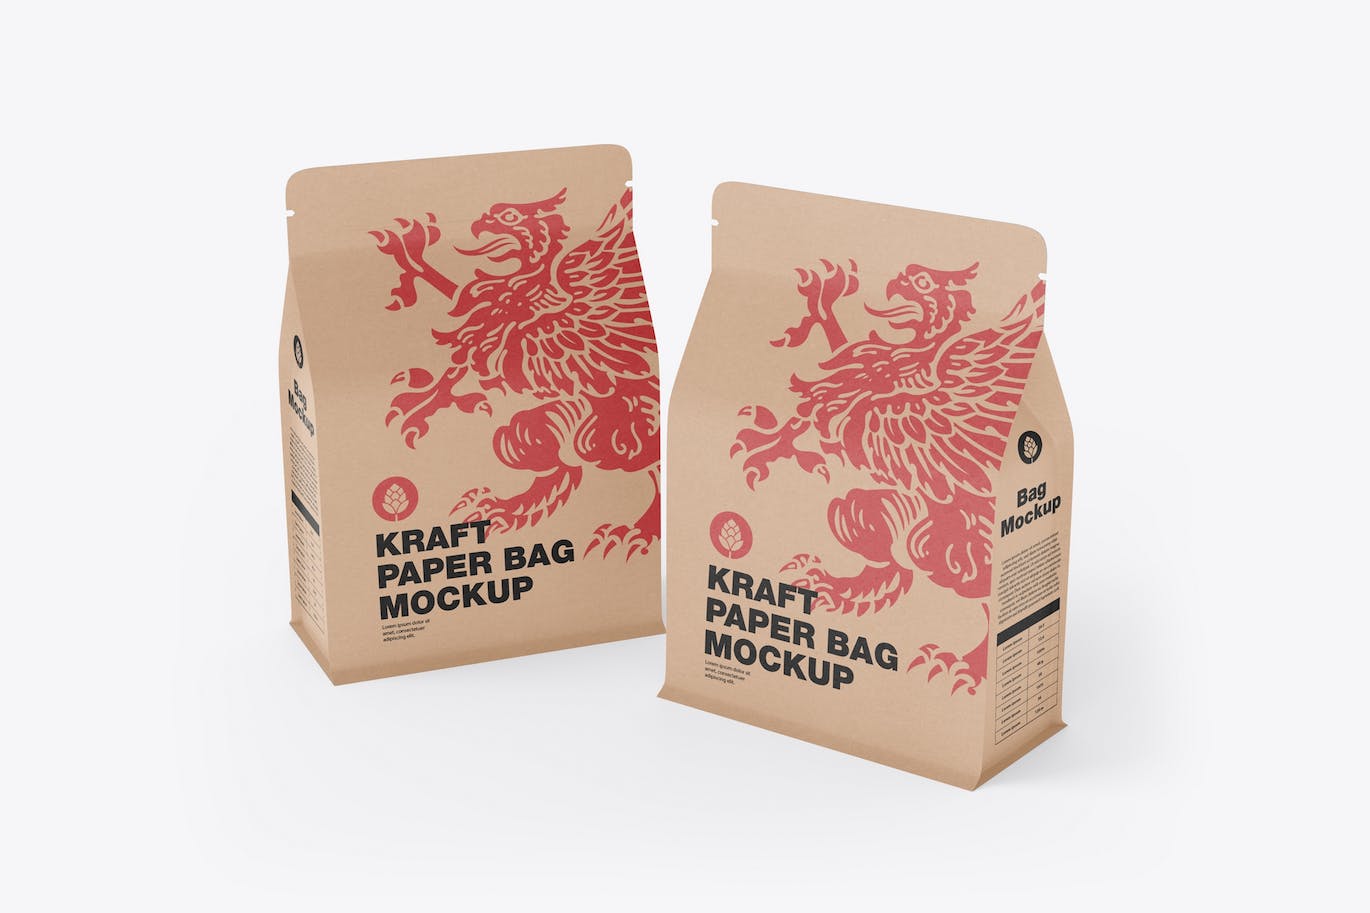 纸质牛皮纸食品袋包装设计样机 Paper Food Bag Mockup 样机素材 第1张